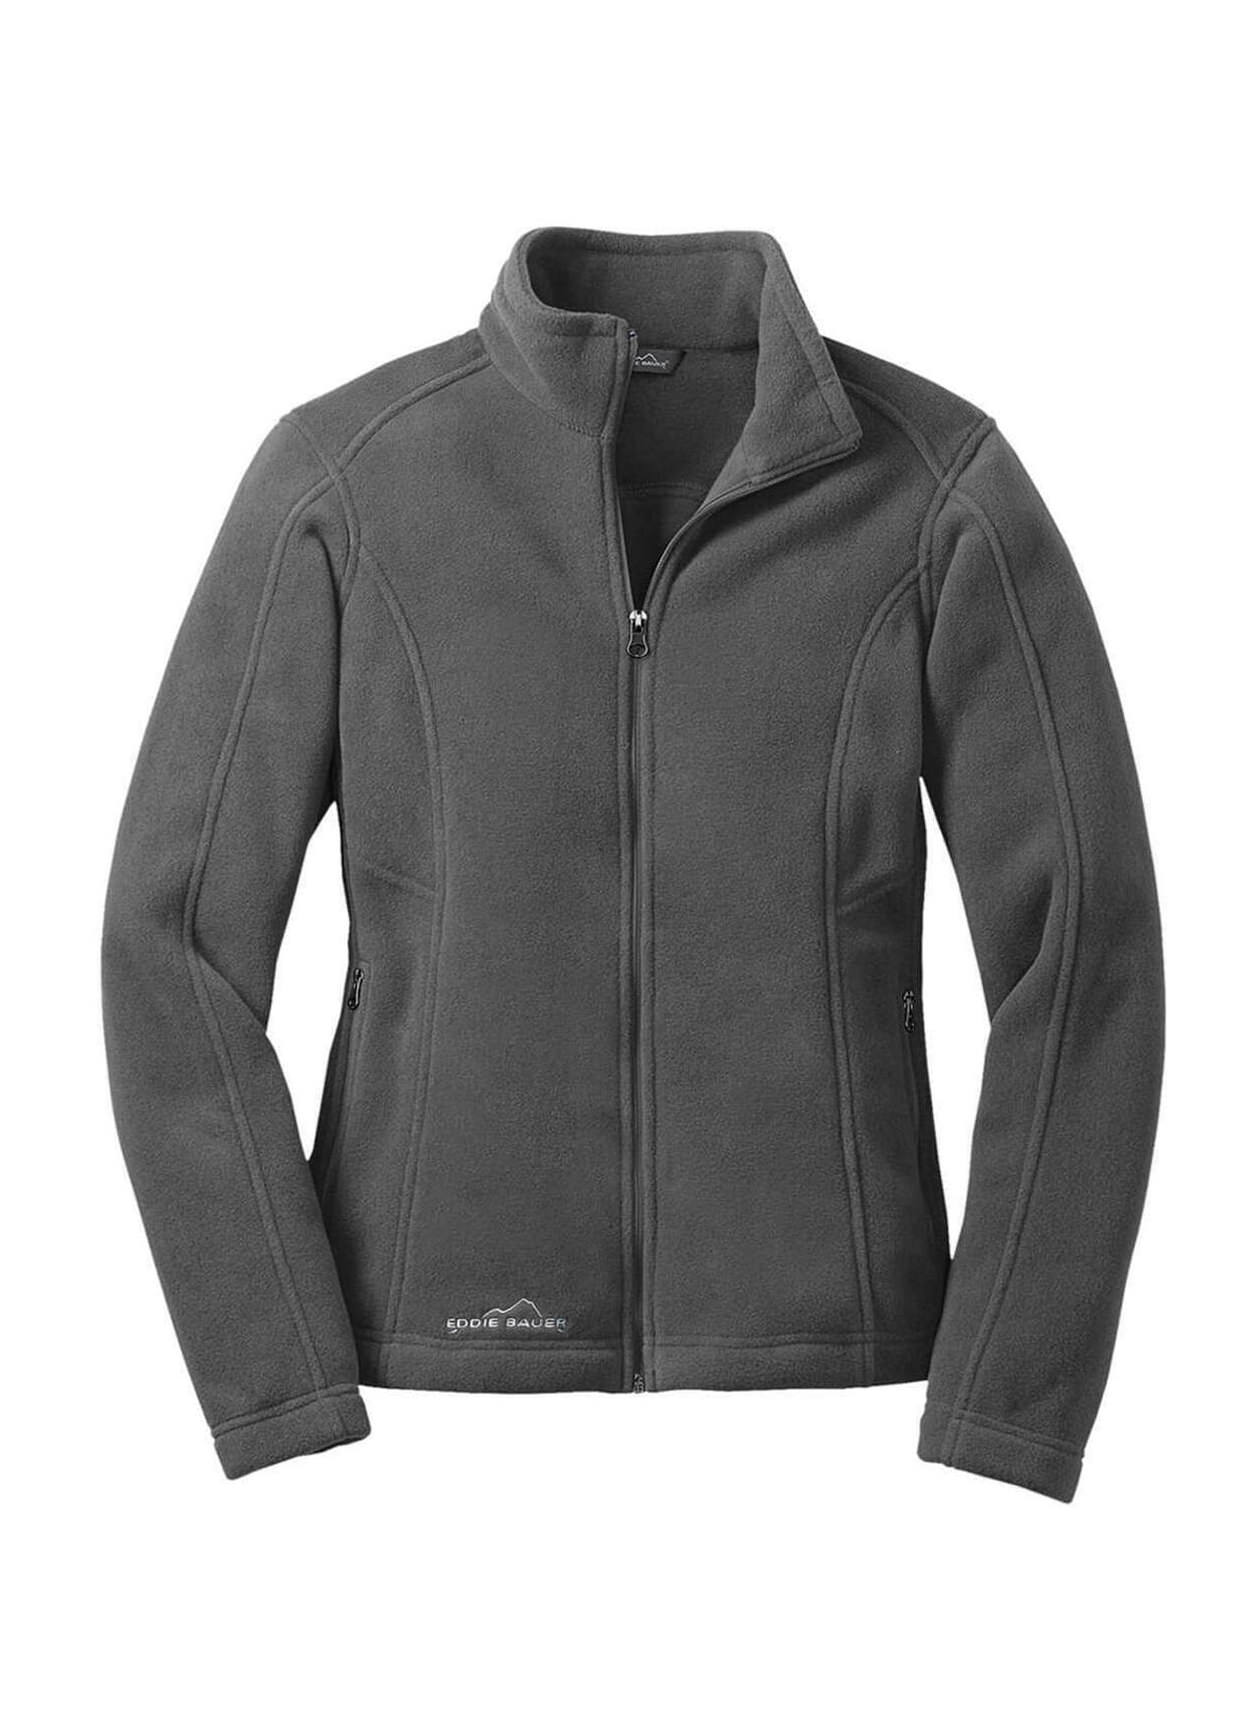 Eddie Bauer Women's Grey Steel Fleece Jacket